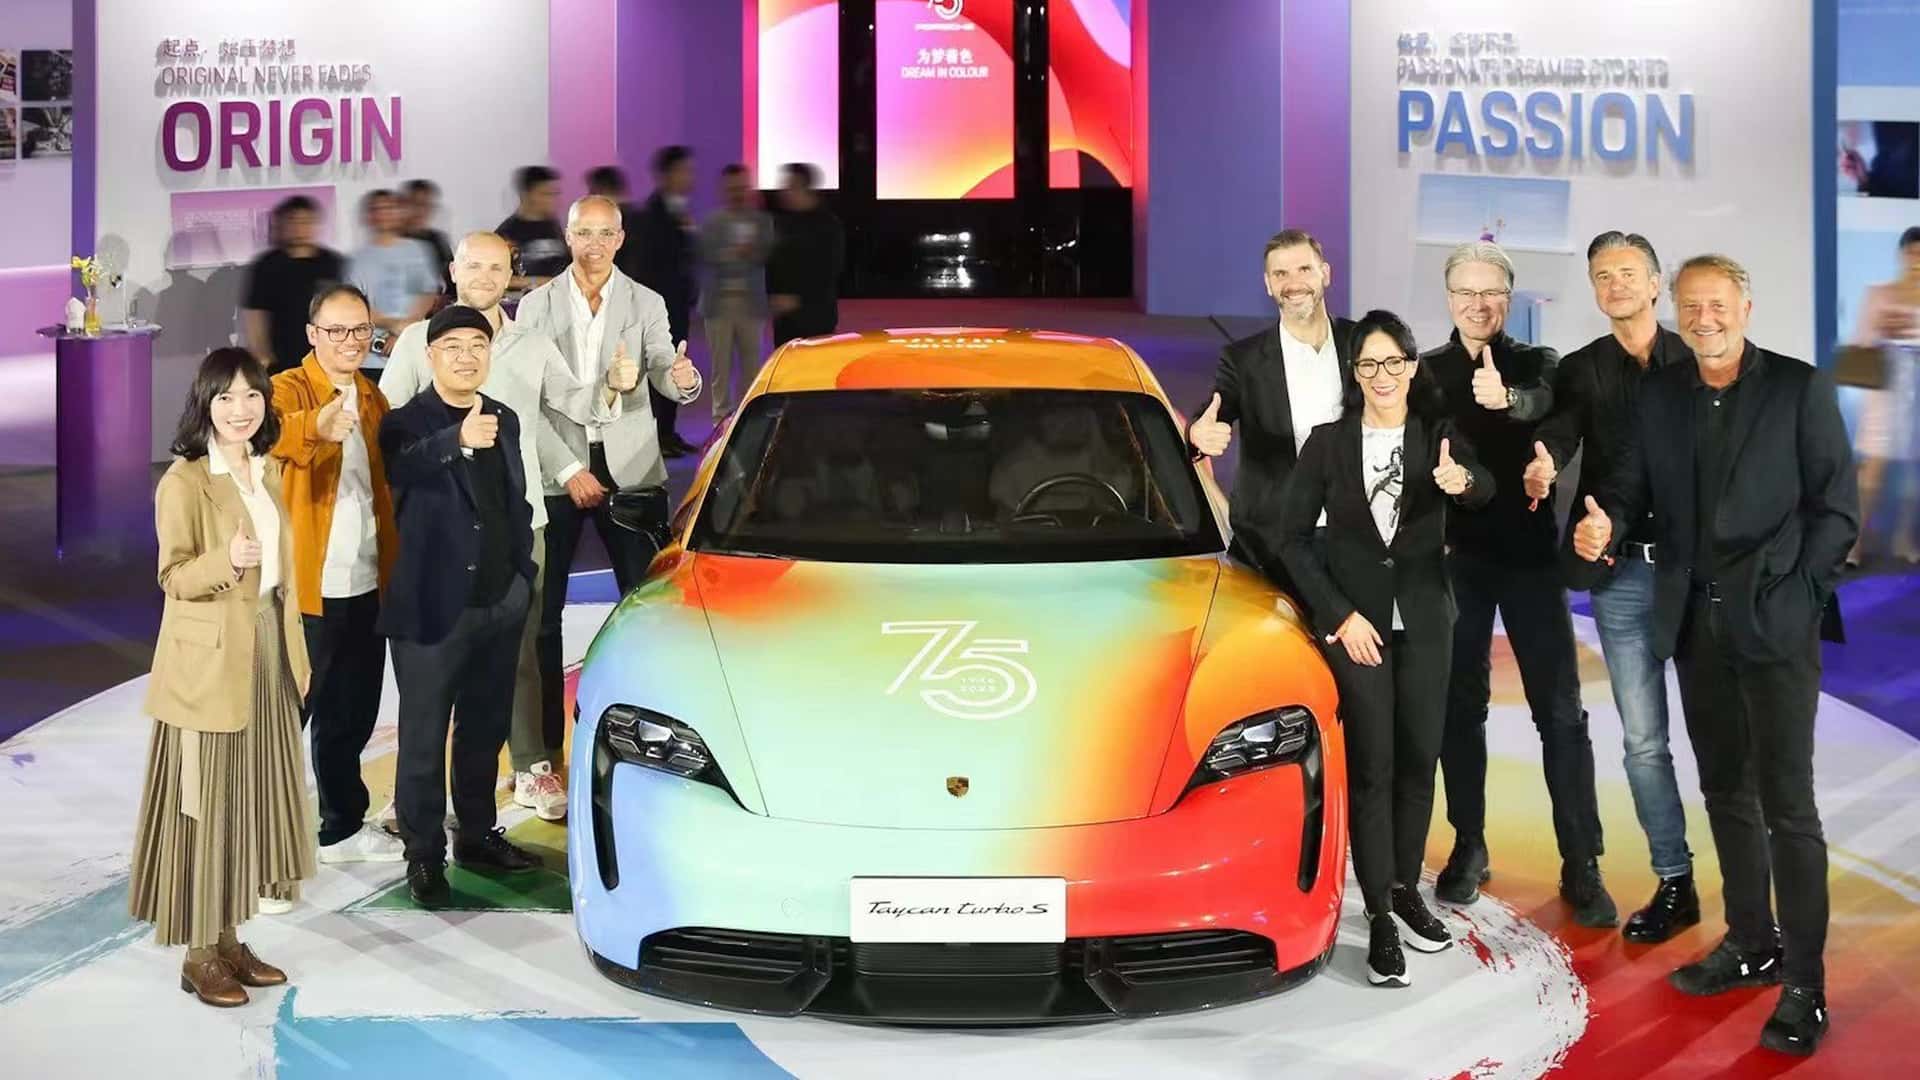 Porsche feiert 75-jähriges Jubiläum mit mehrfarbigem Kunstauto Taycan in Shanghai-Ausstellung